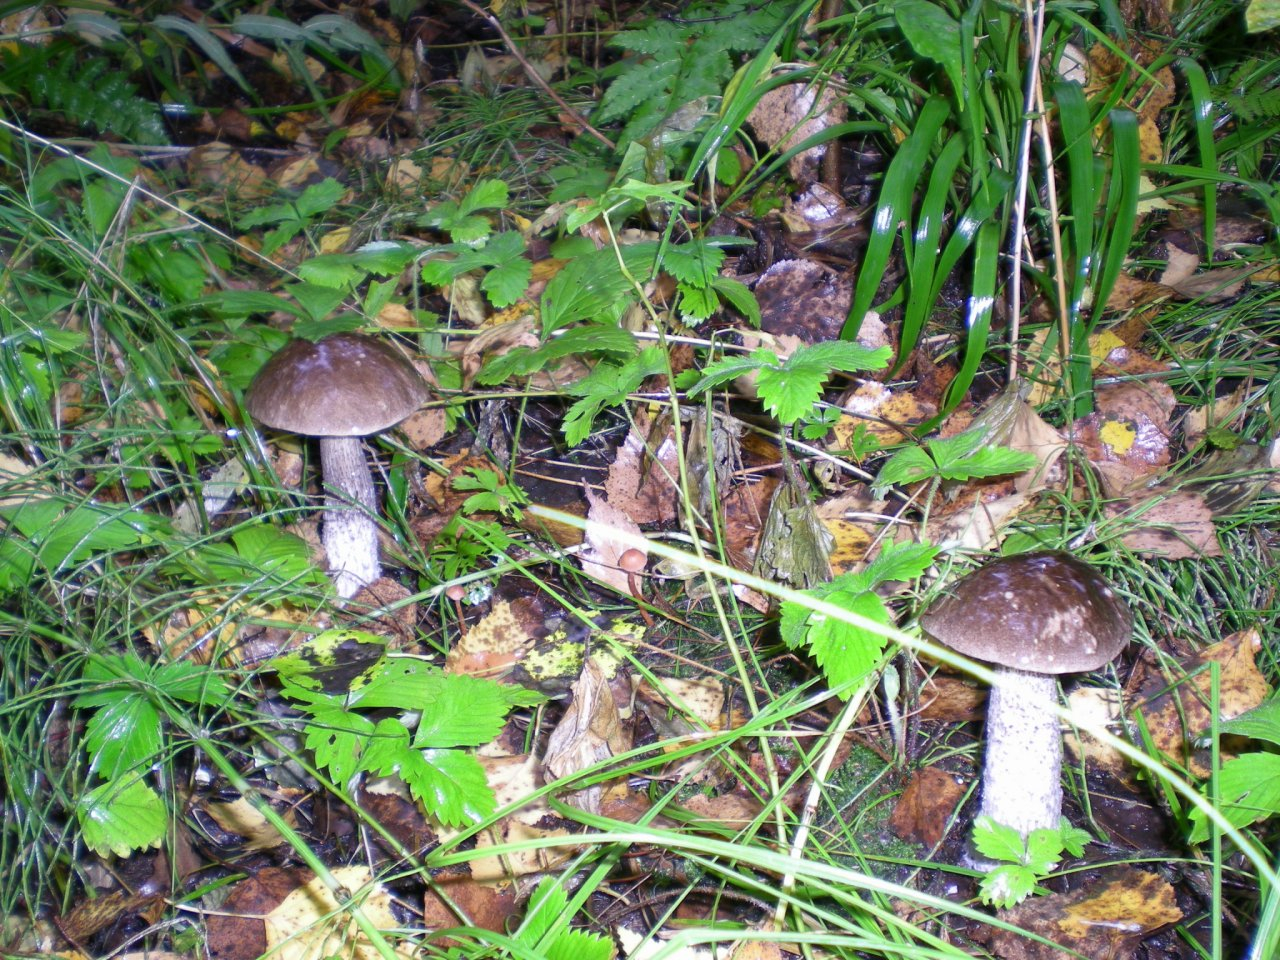 Первые грибы стали причиной отравления в Нижегородской области